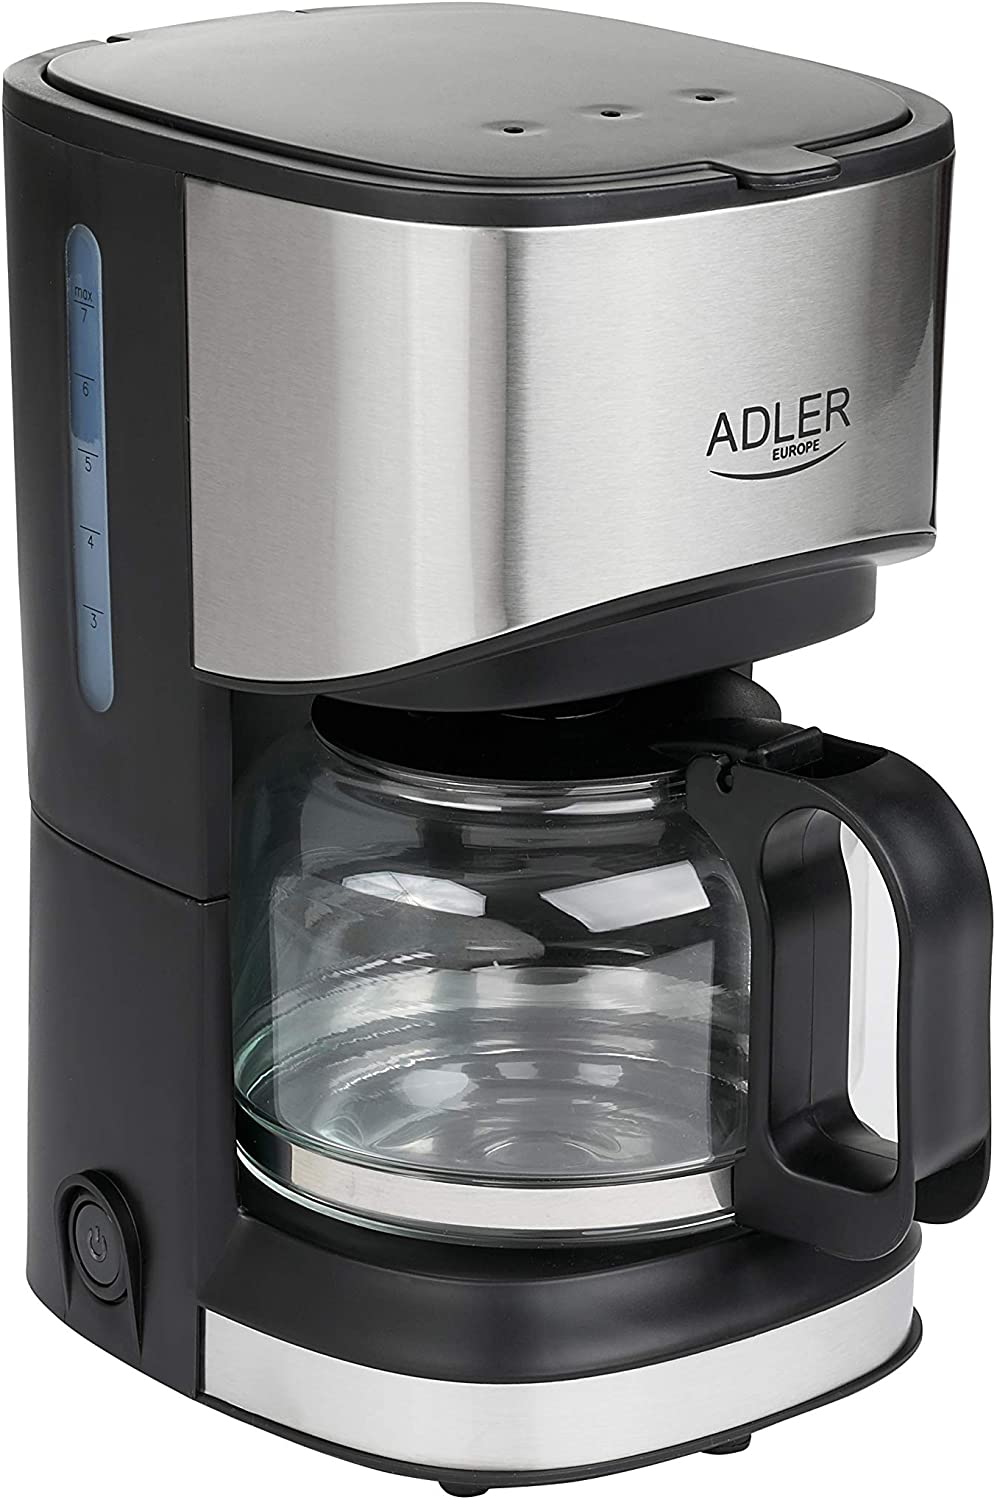 Adler AD 4407 Cafetera de goteo Coffee Pot Plastic Black and Grey 550 Glass